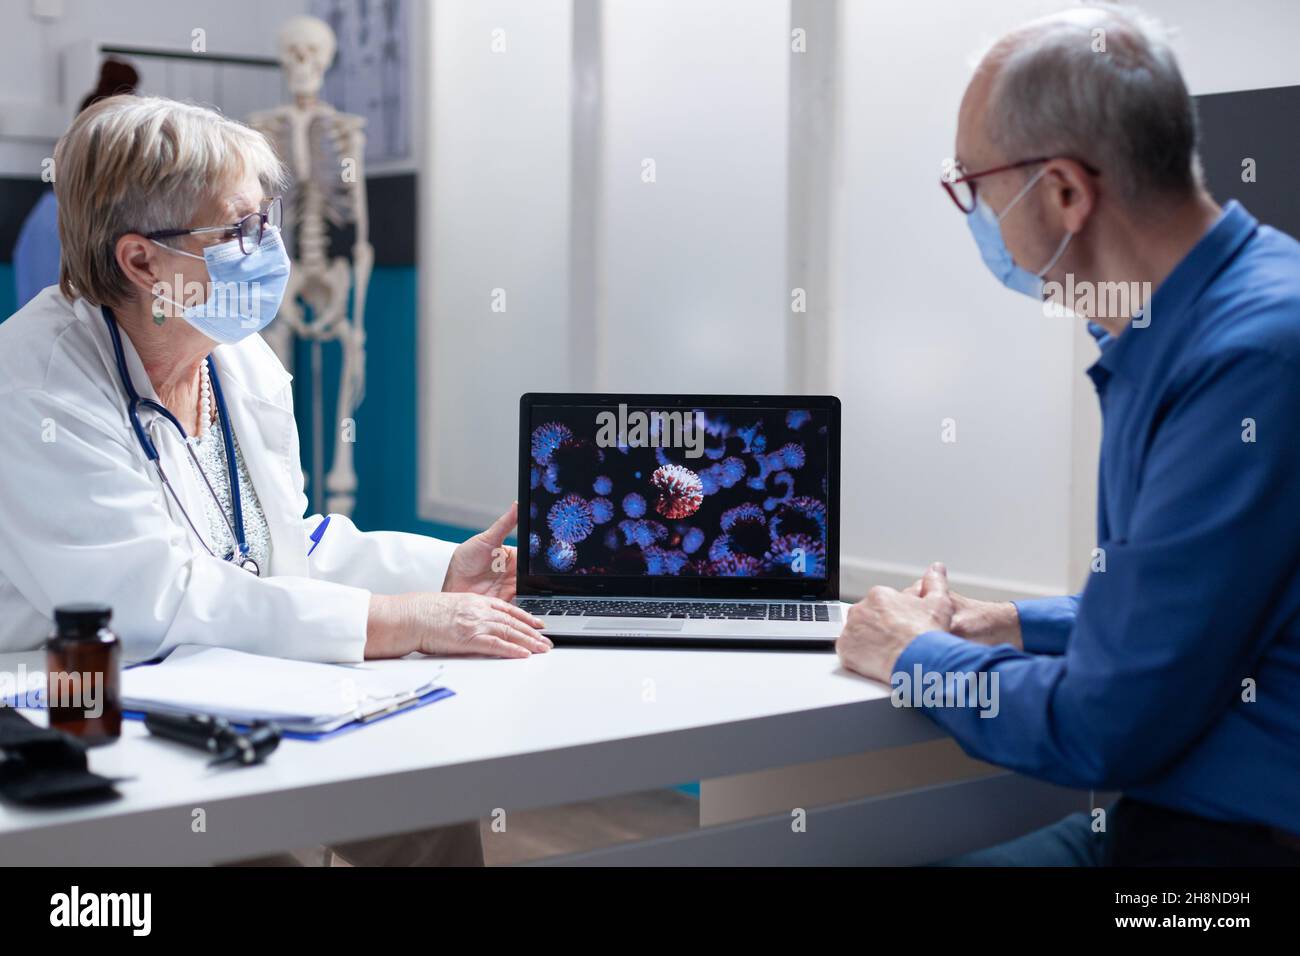 Médecin expliquant les bactéries coronavirus sur ordinateur portable à l'homme âgé, portant un masque facial dans le cabinet médical.Femme médecin montrant une représentation visuelle de la pandémie de virus lors de la visite de contrôle avec le patient Banque D'Images